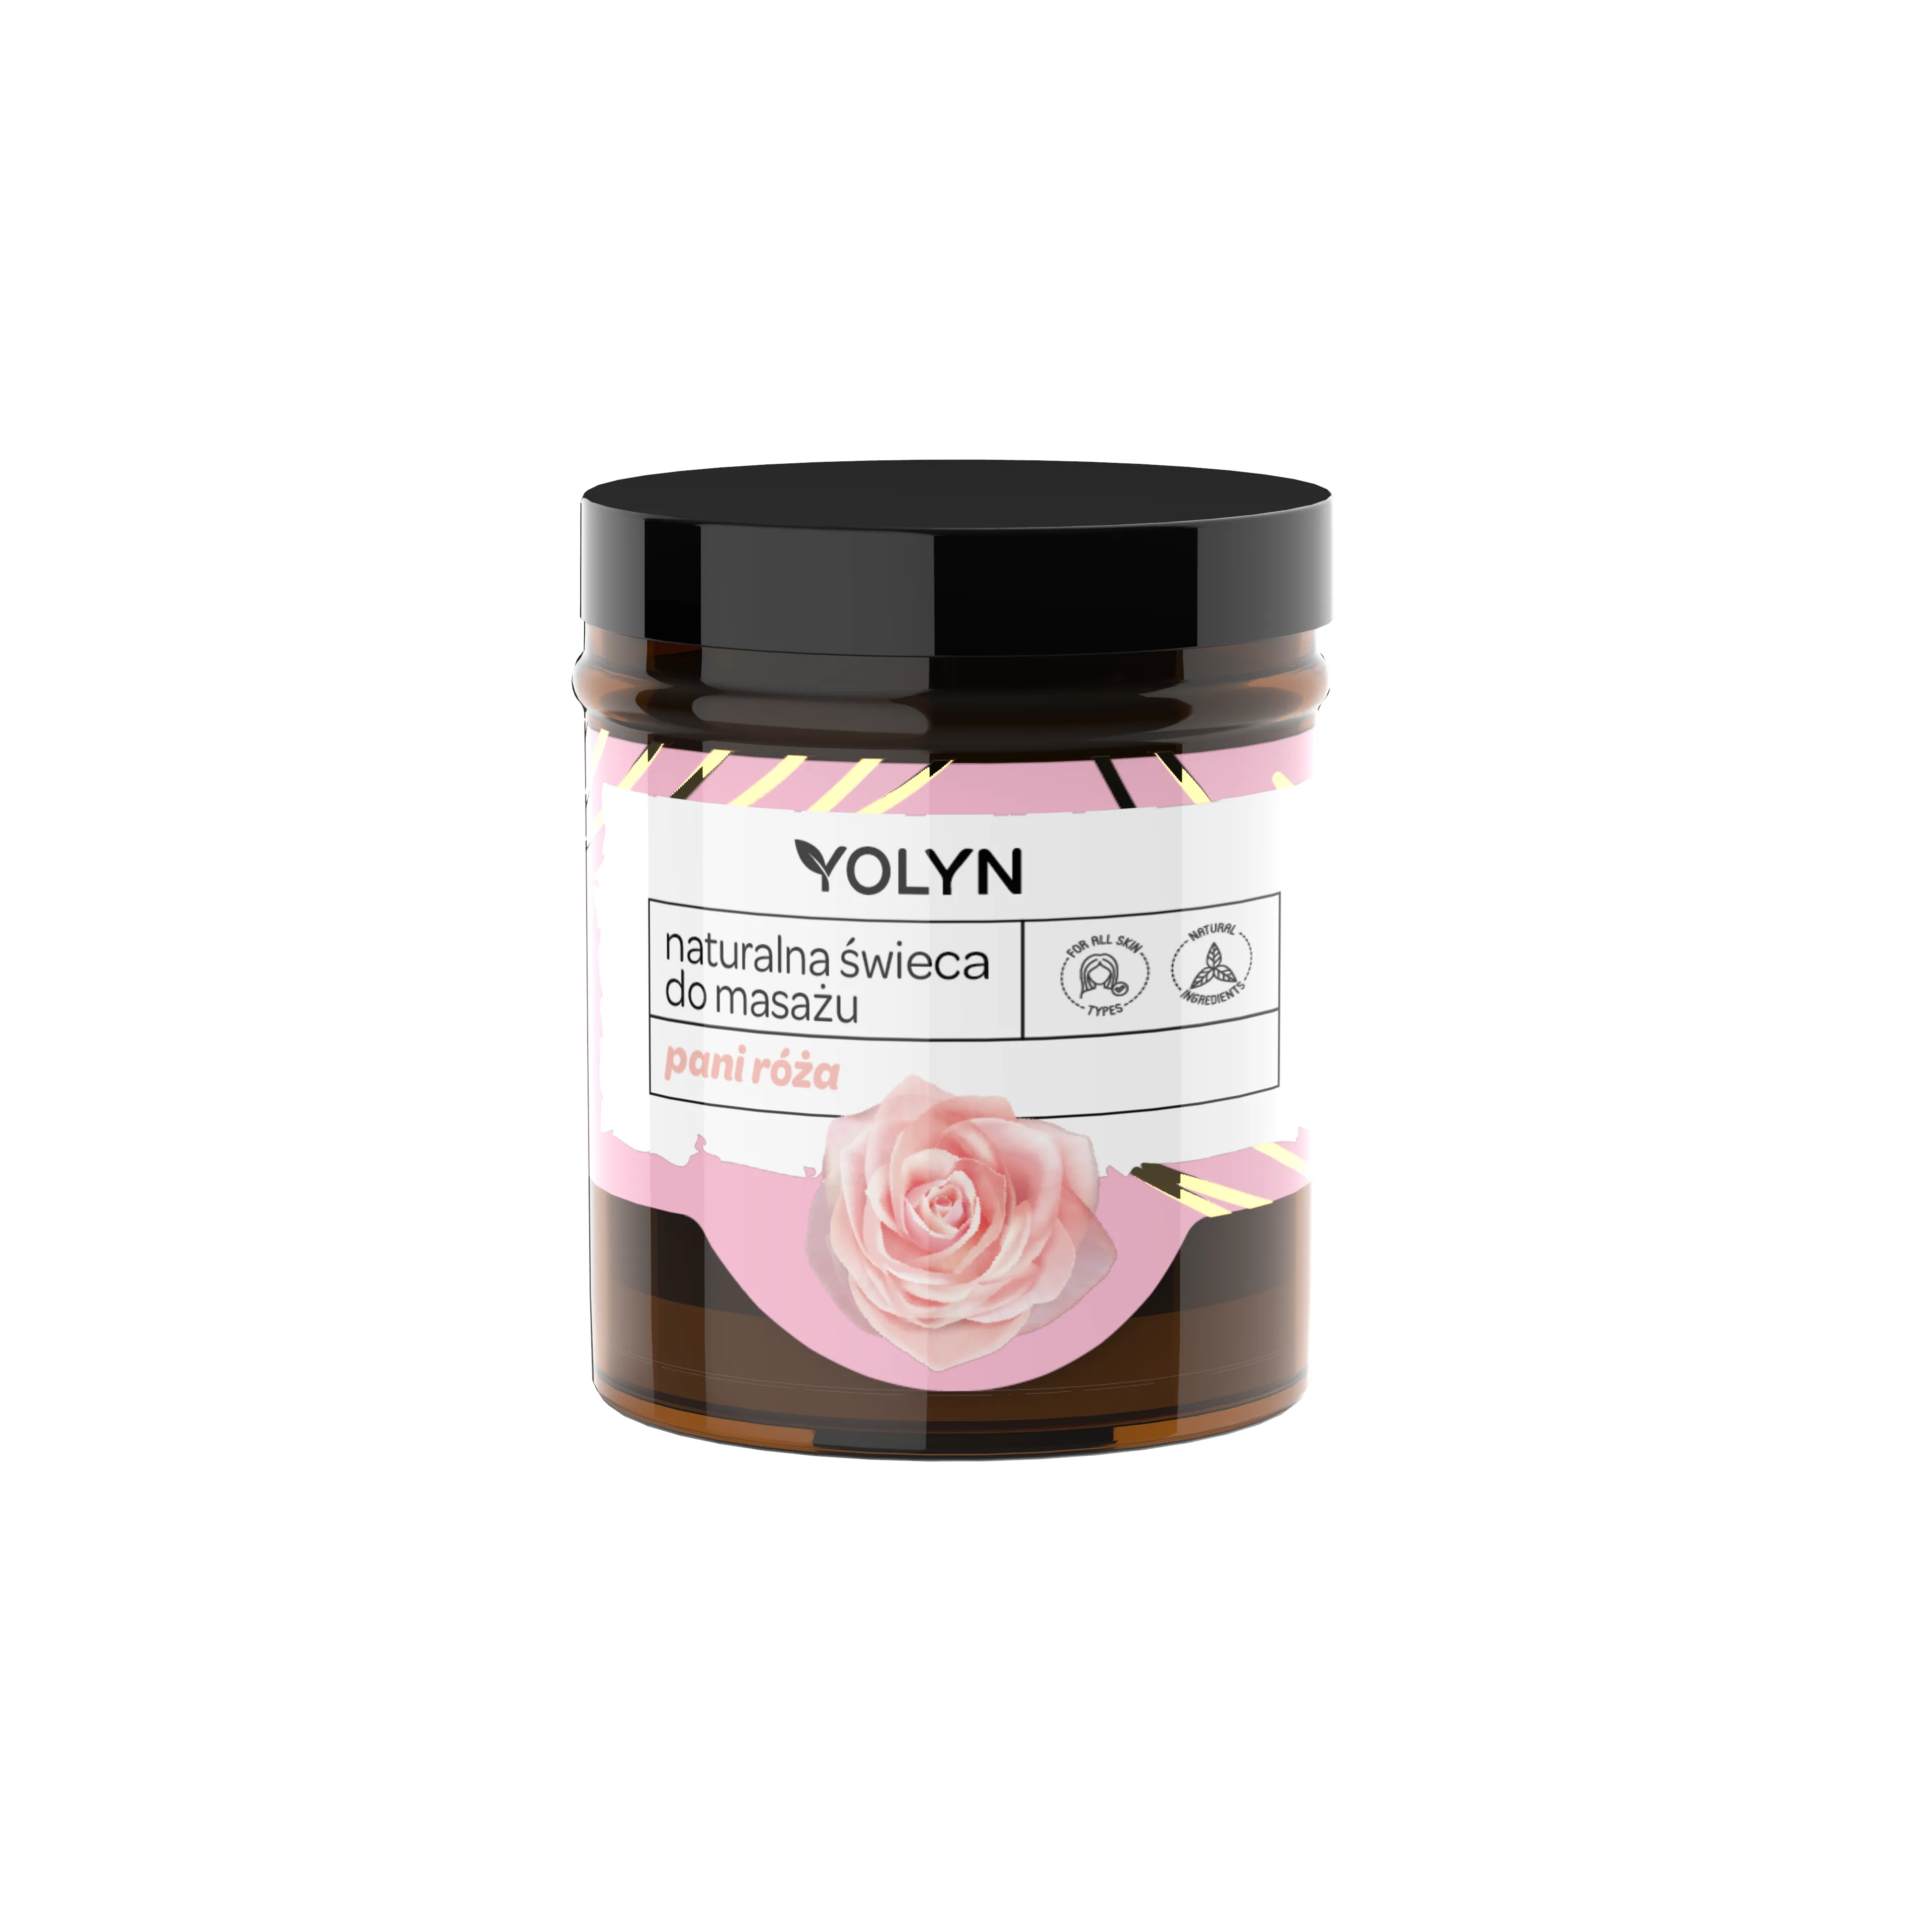 Yolyn Pani Róża świeca do masażu, 120 ml